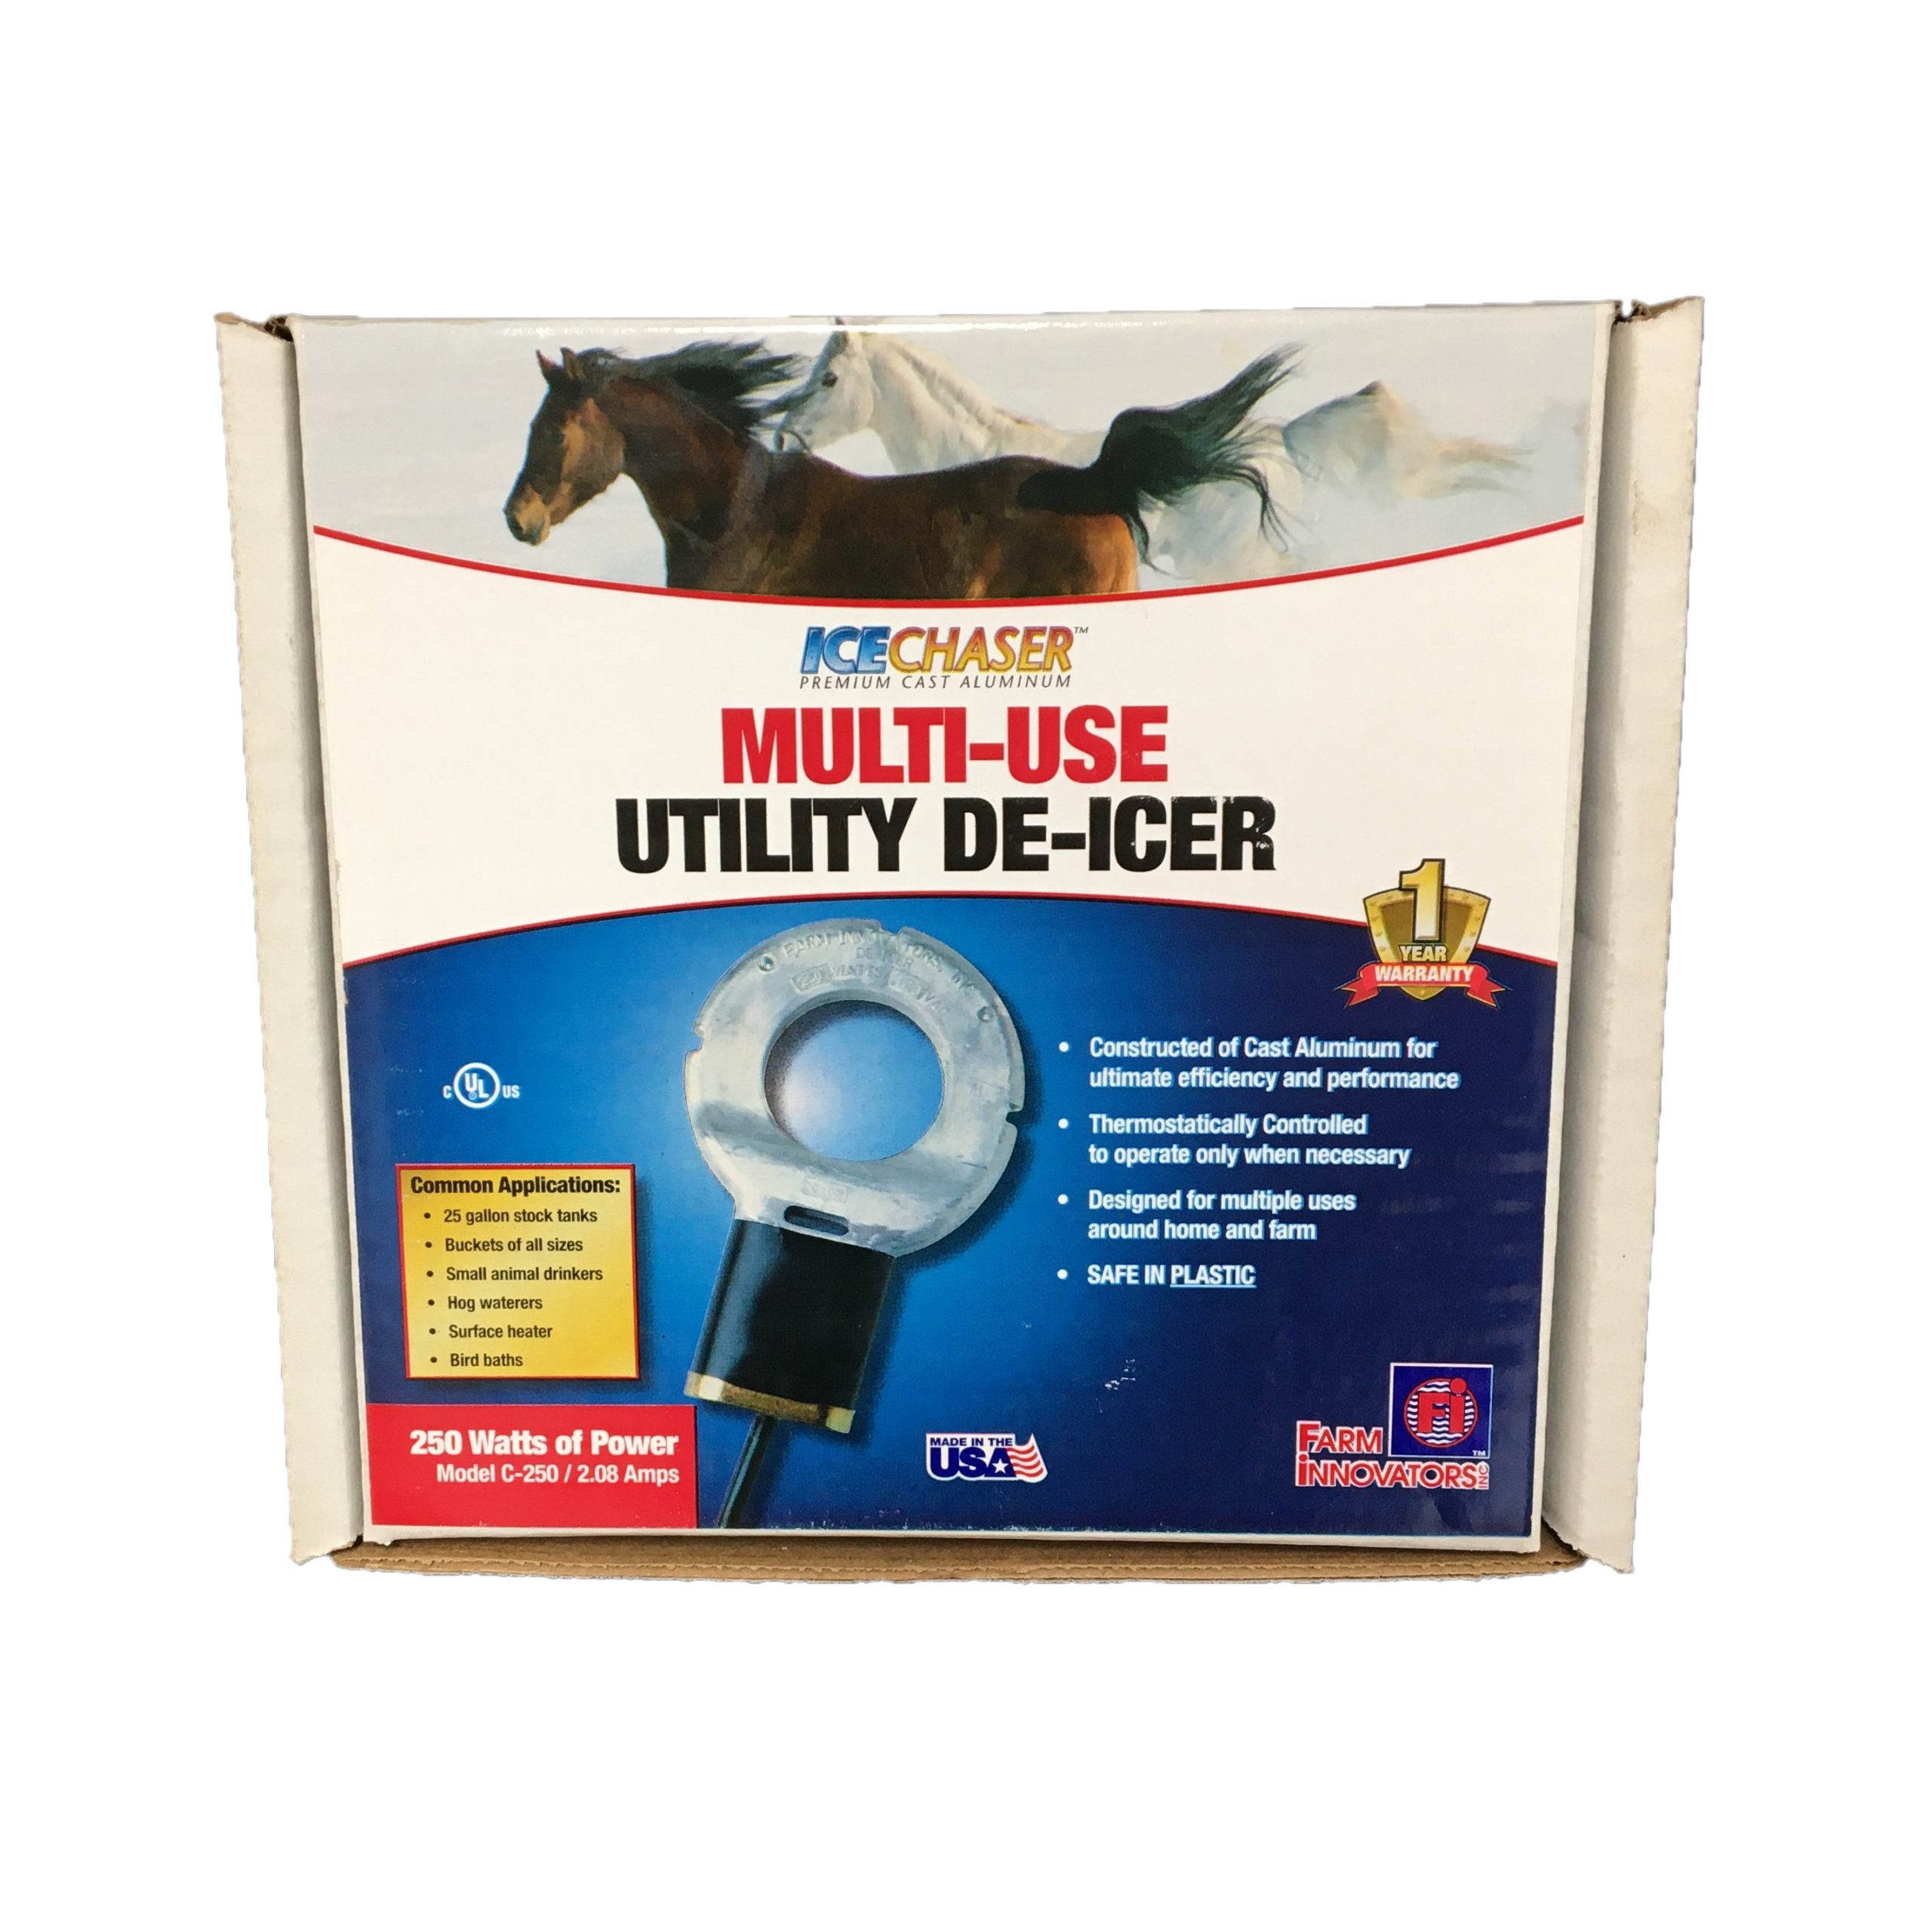 Multi-Use Utility De-Icer